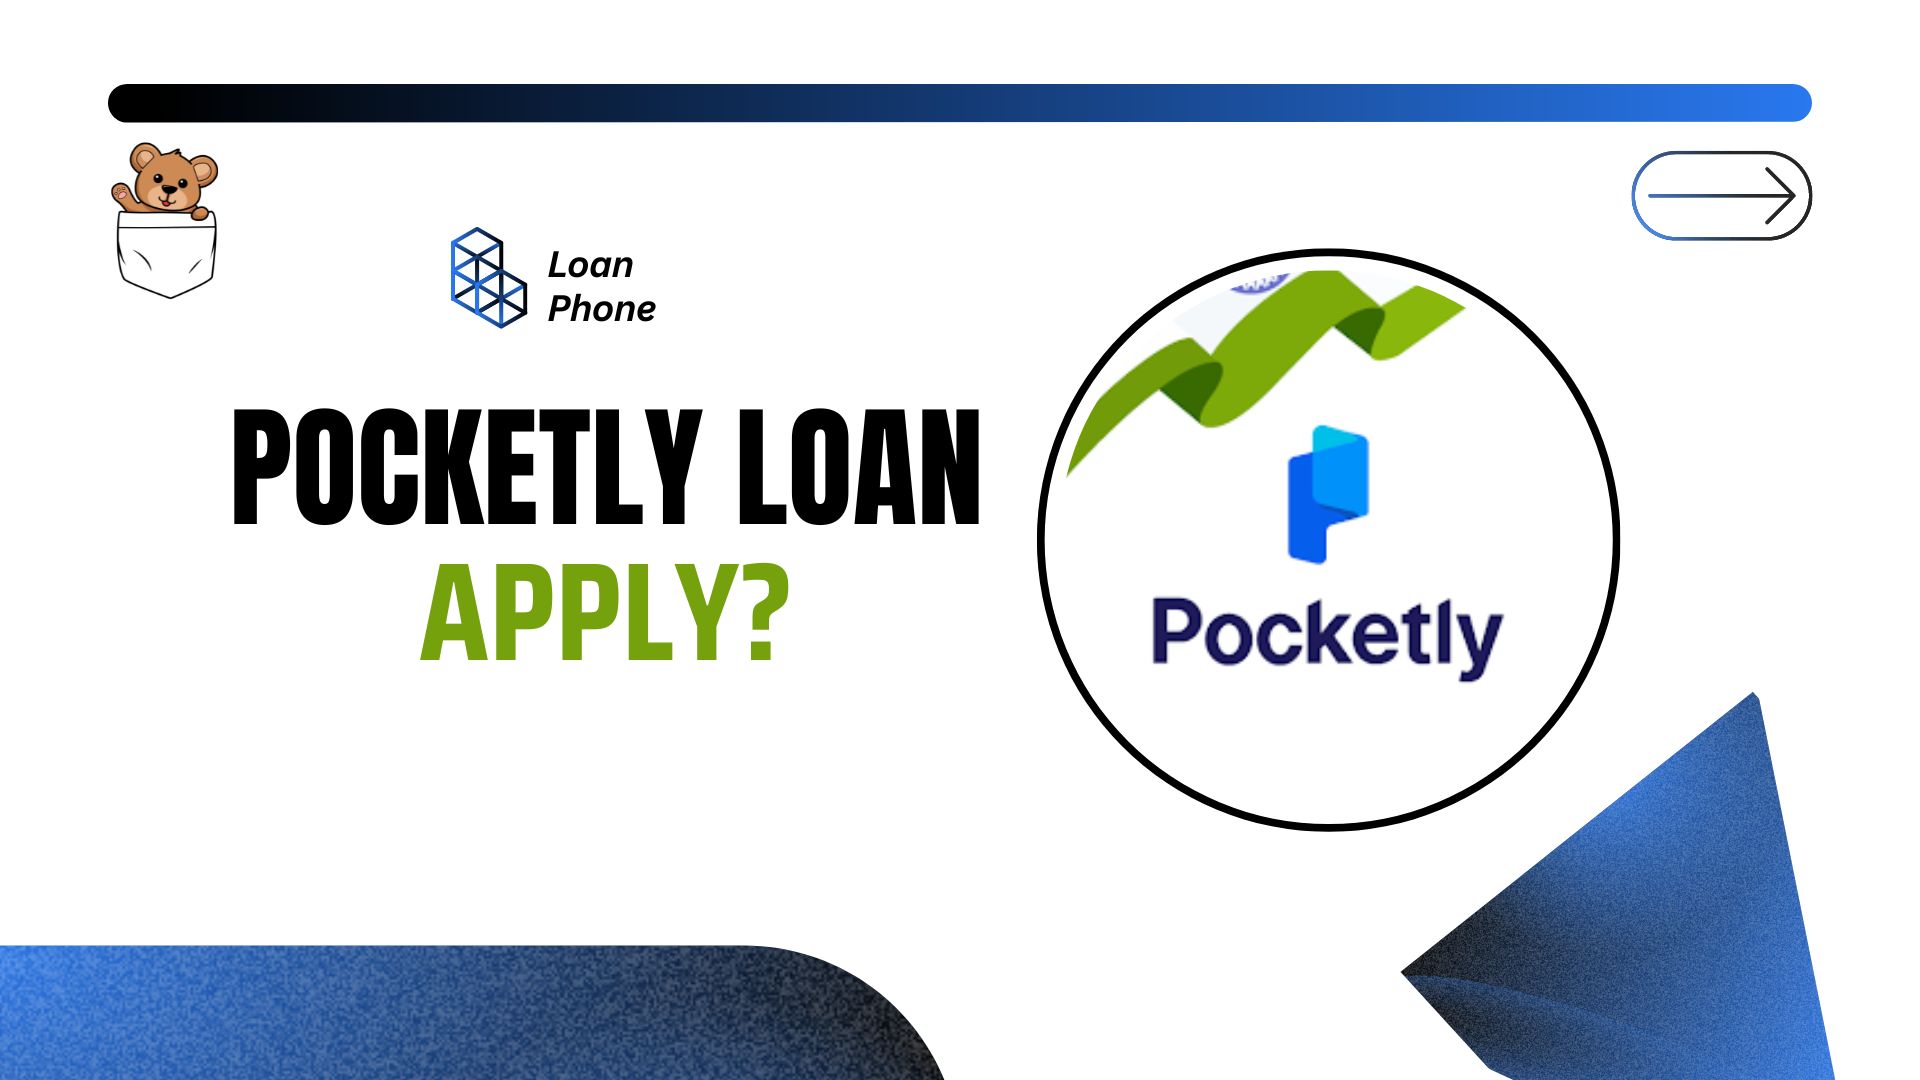 Pocketly Loan App से लोन कैसे लें?